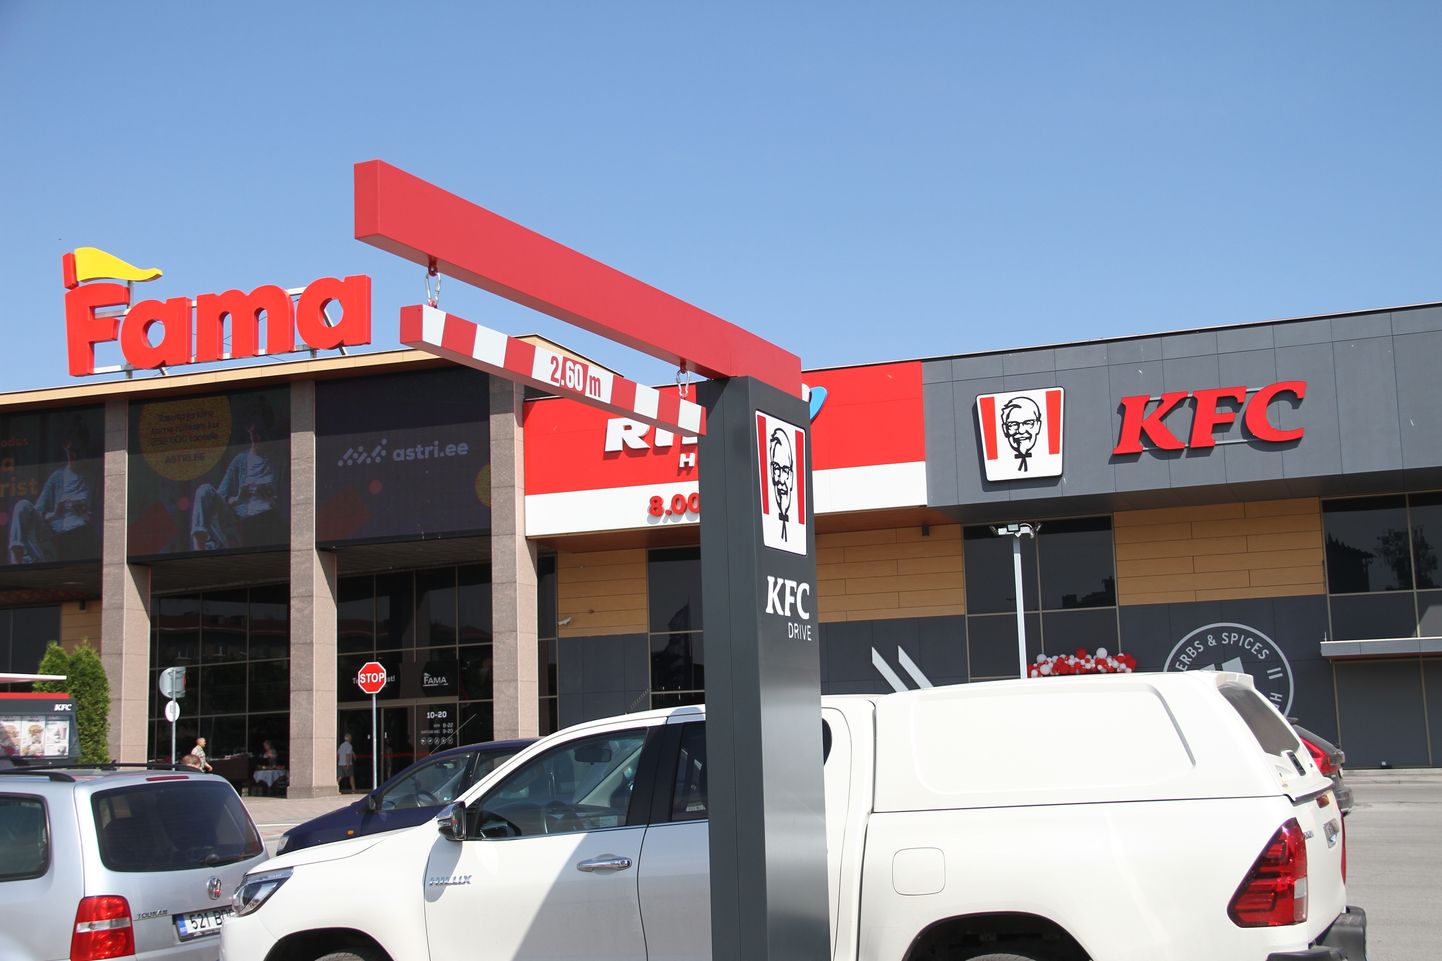 В Нарве открылся ресторан KFC. Очередь в него выстроилась еще за полчаса до открытия.